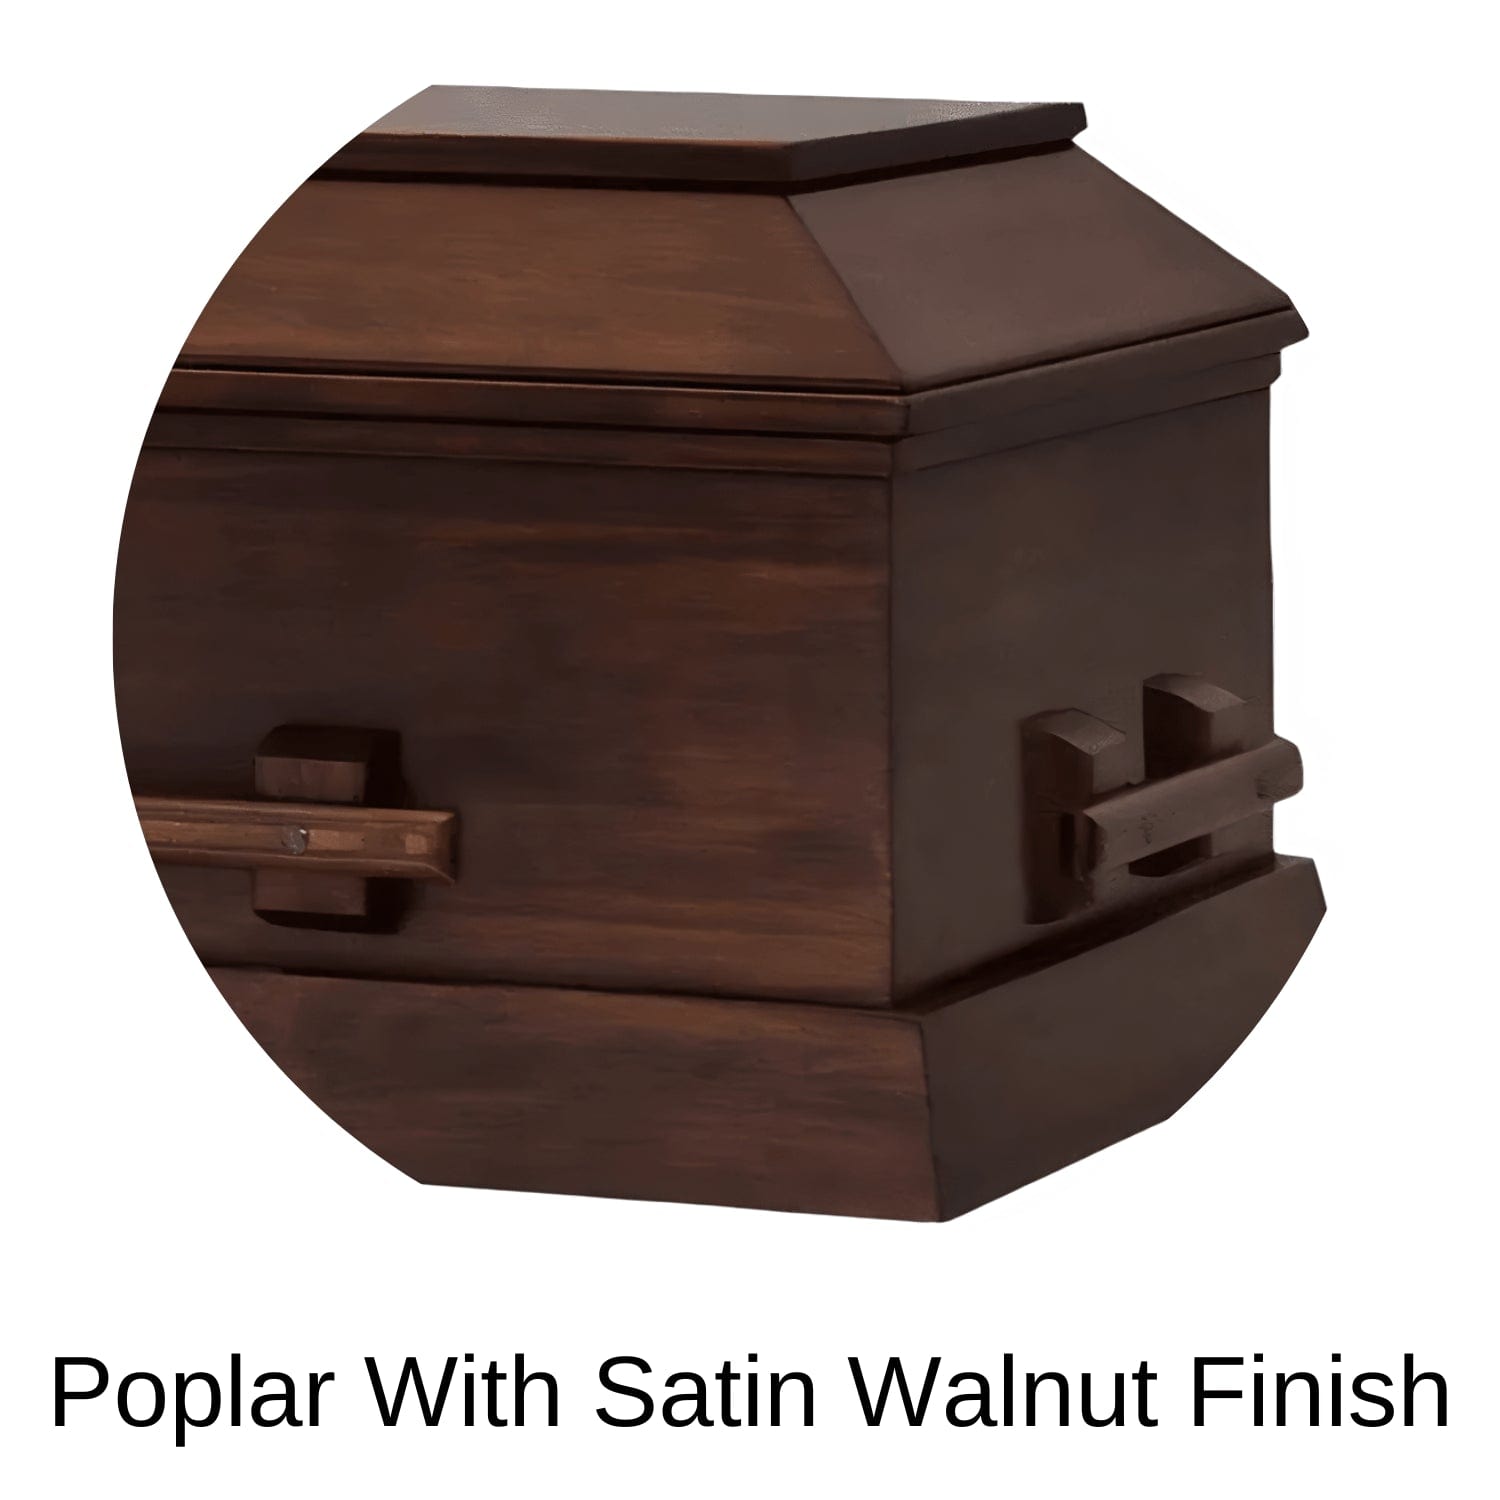 Satin Walnut Finish Of Titan Pillar (Poplar) Series Wood Casket